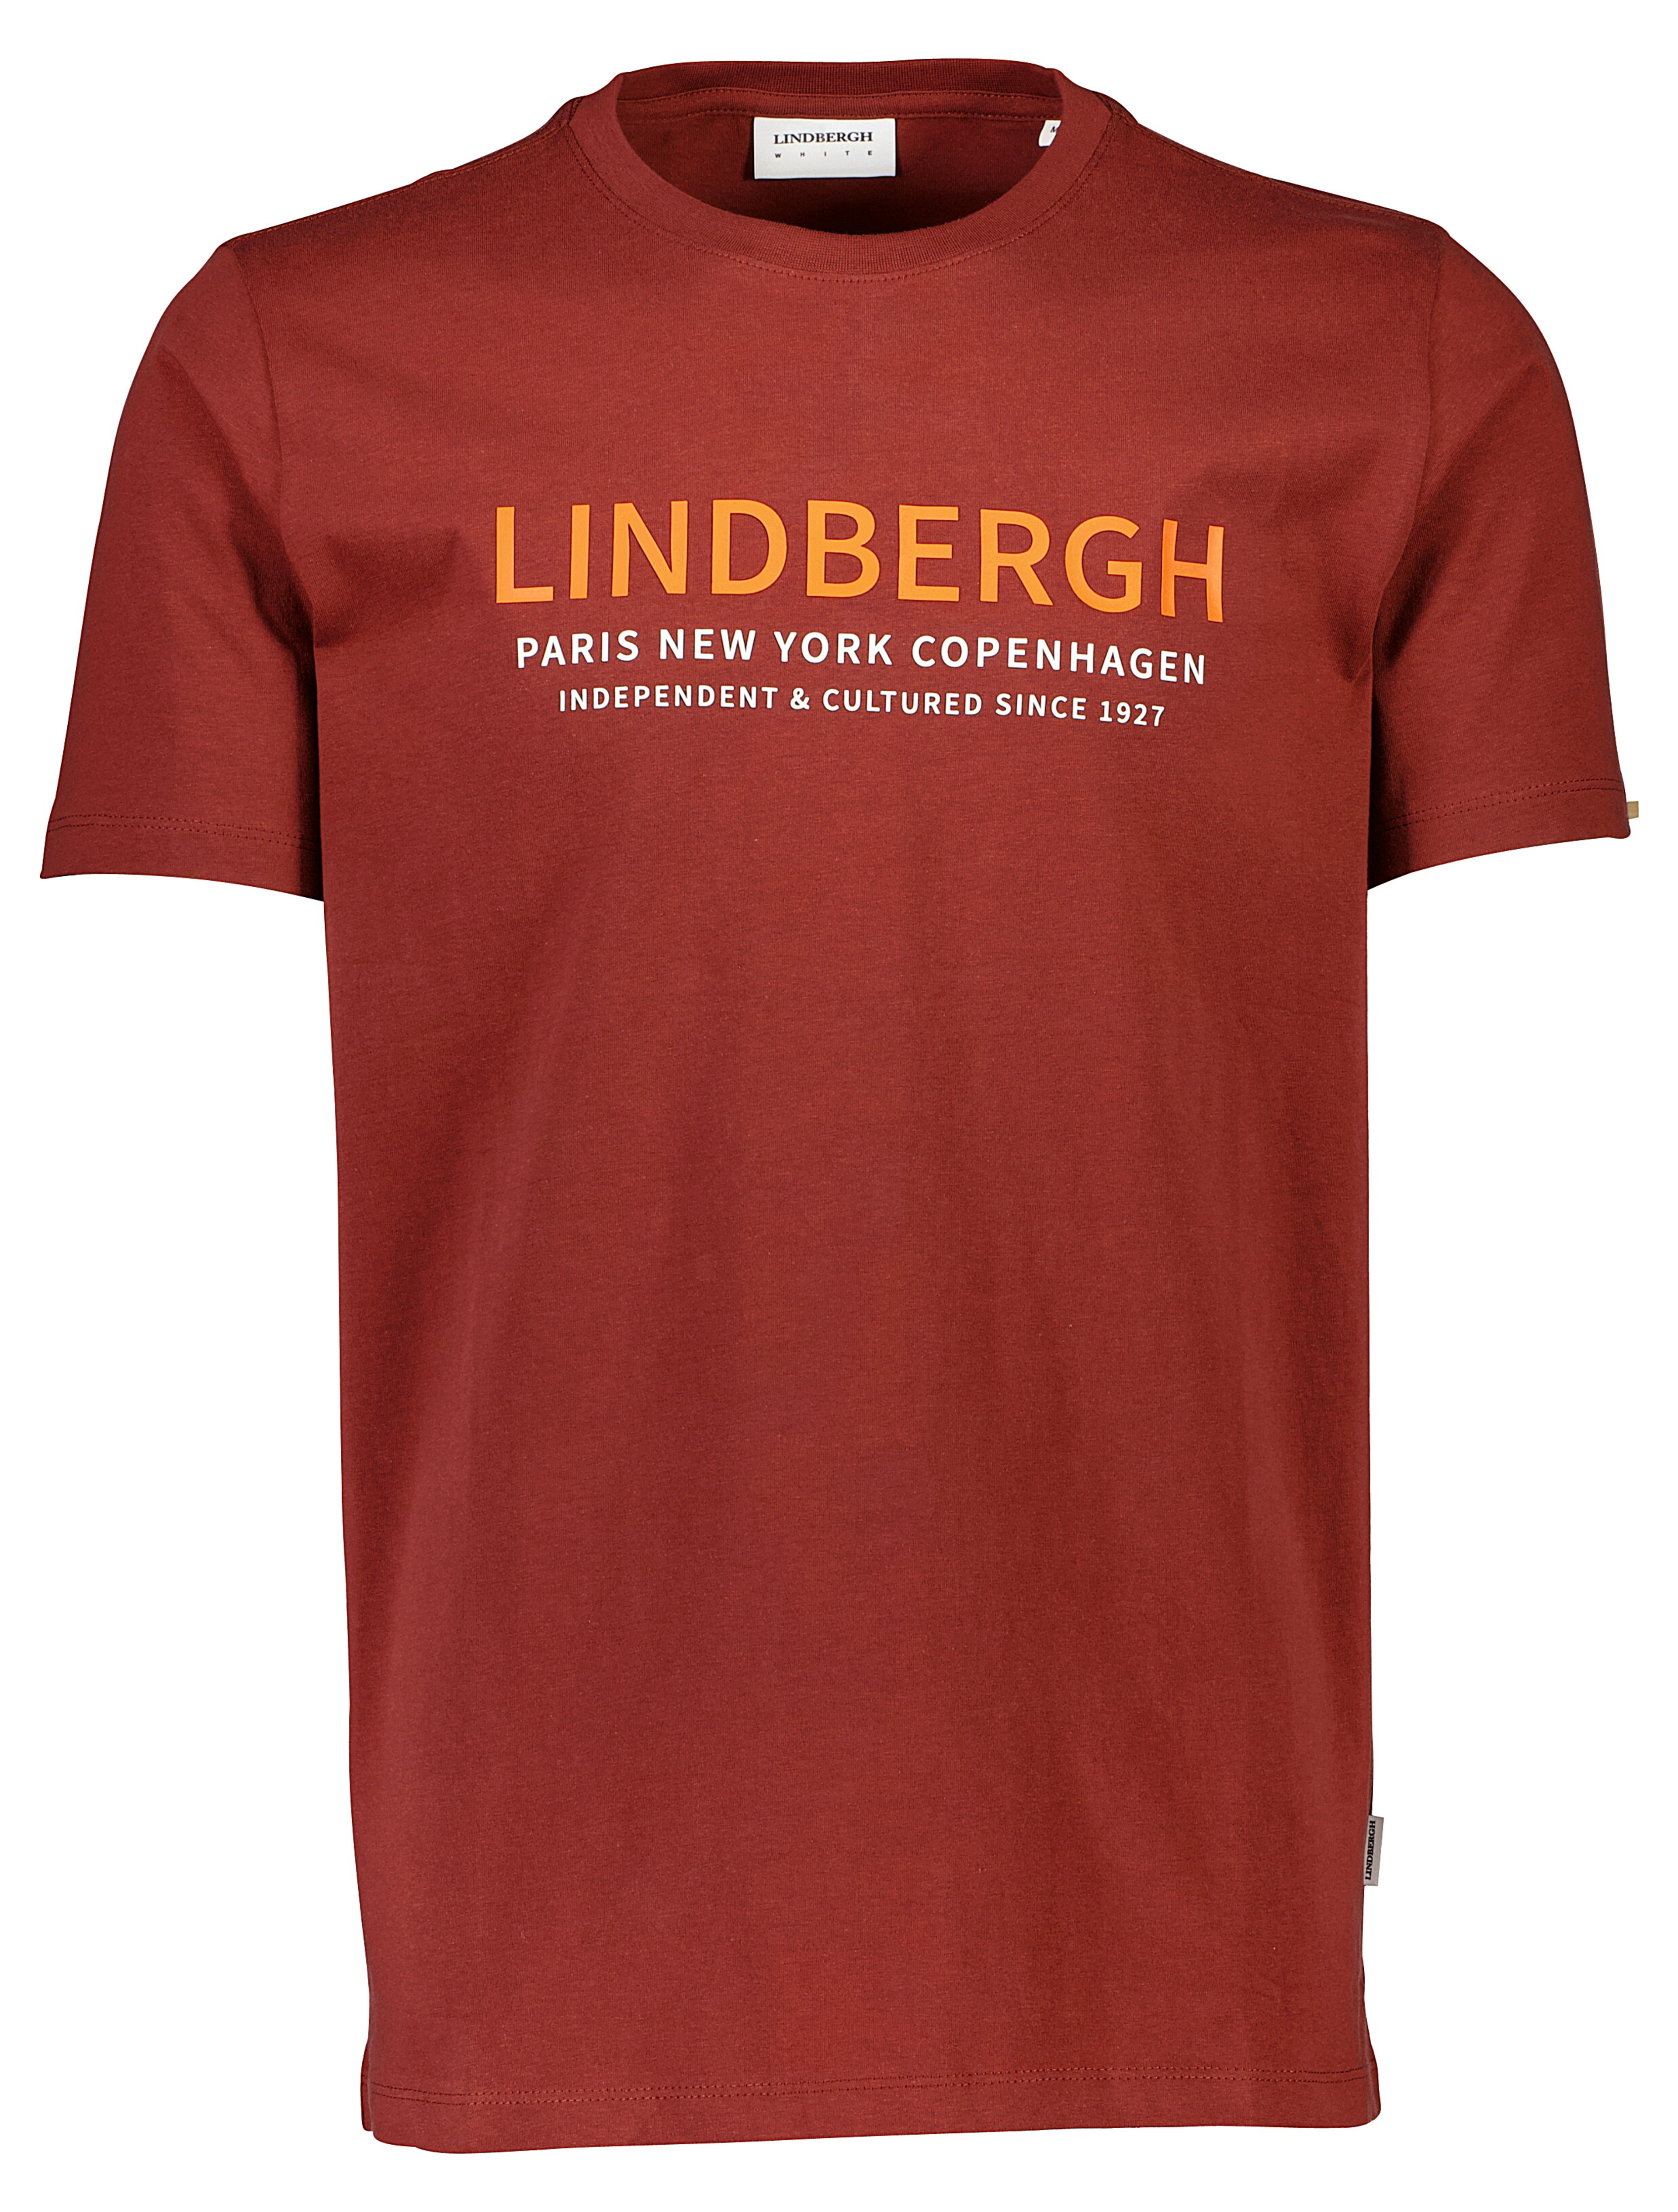 Lindbergh Tee red / dk red